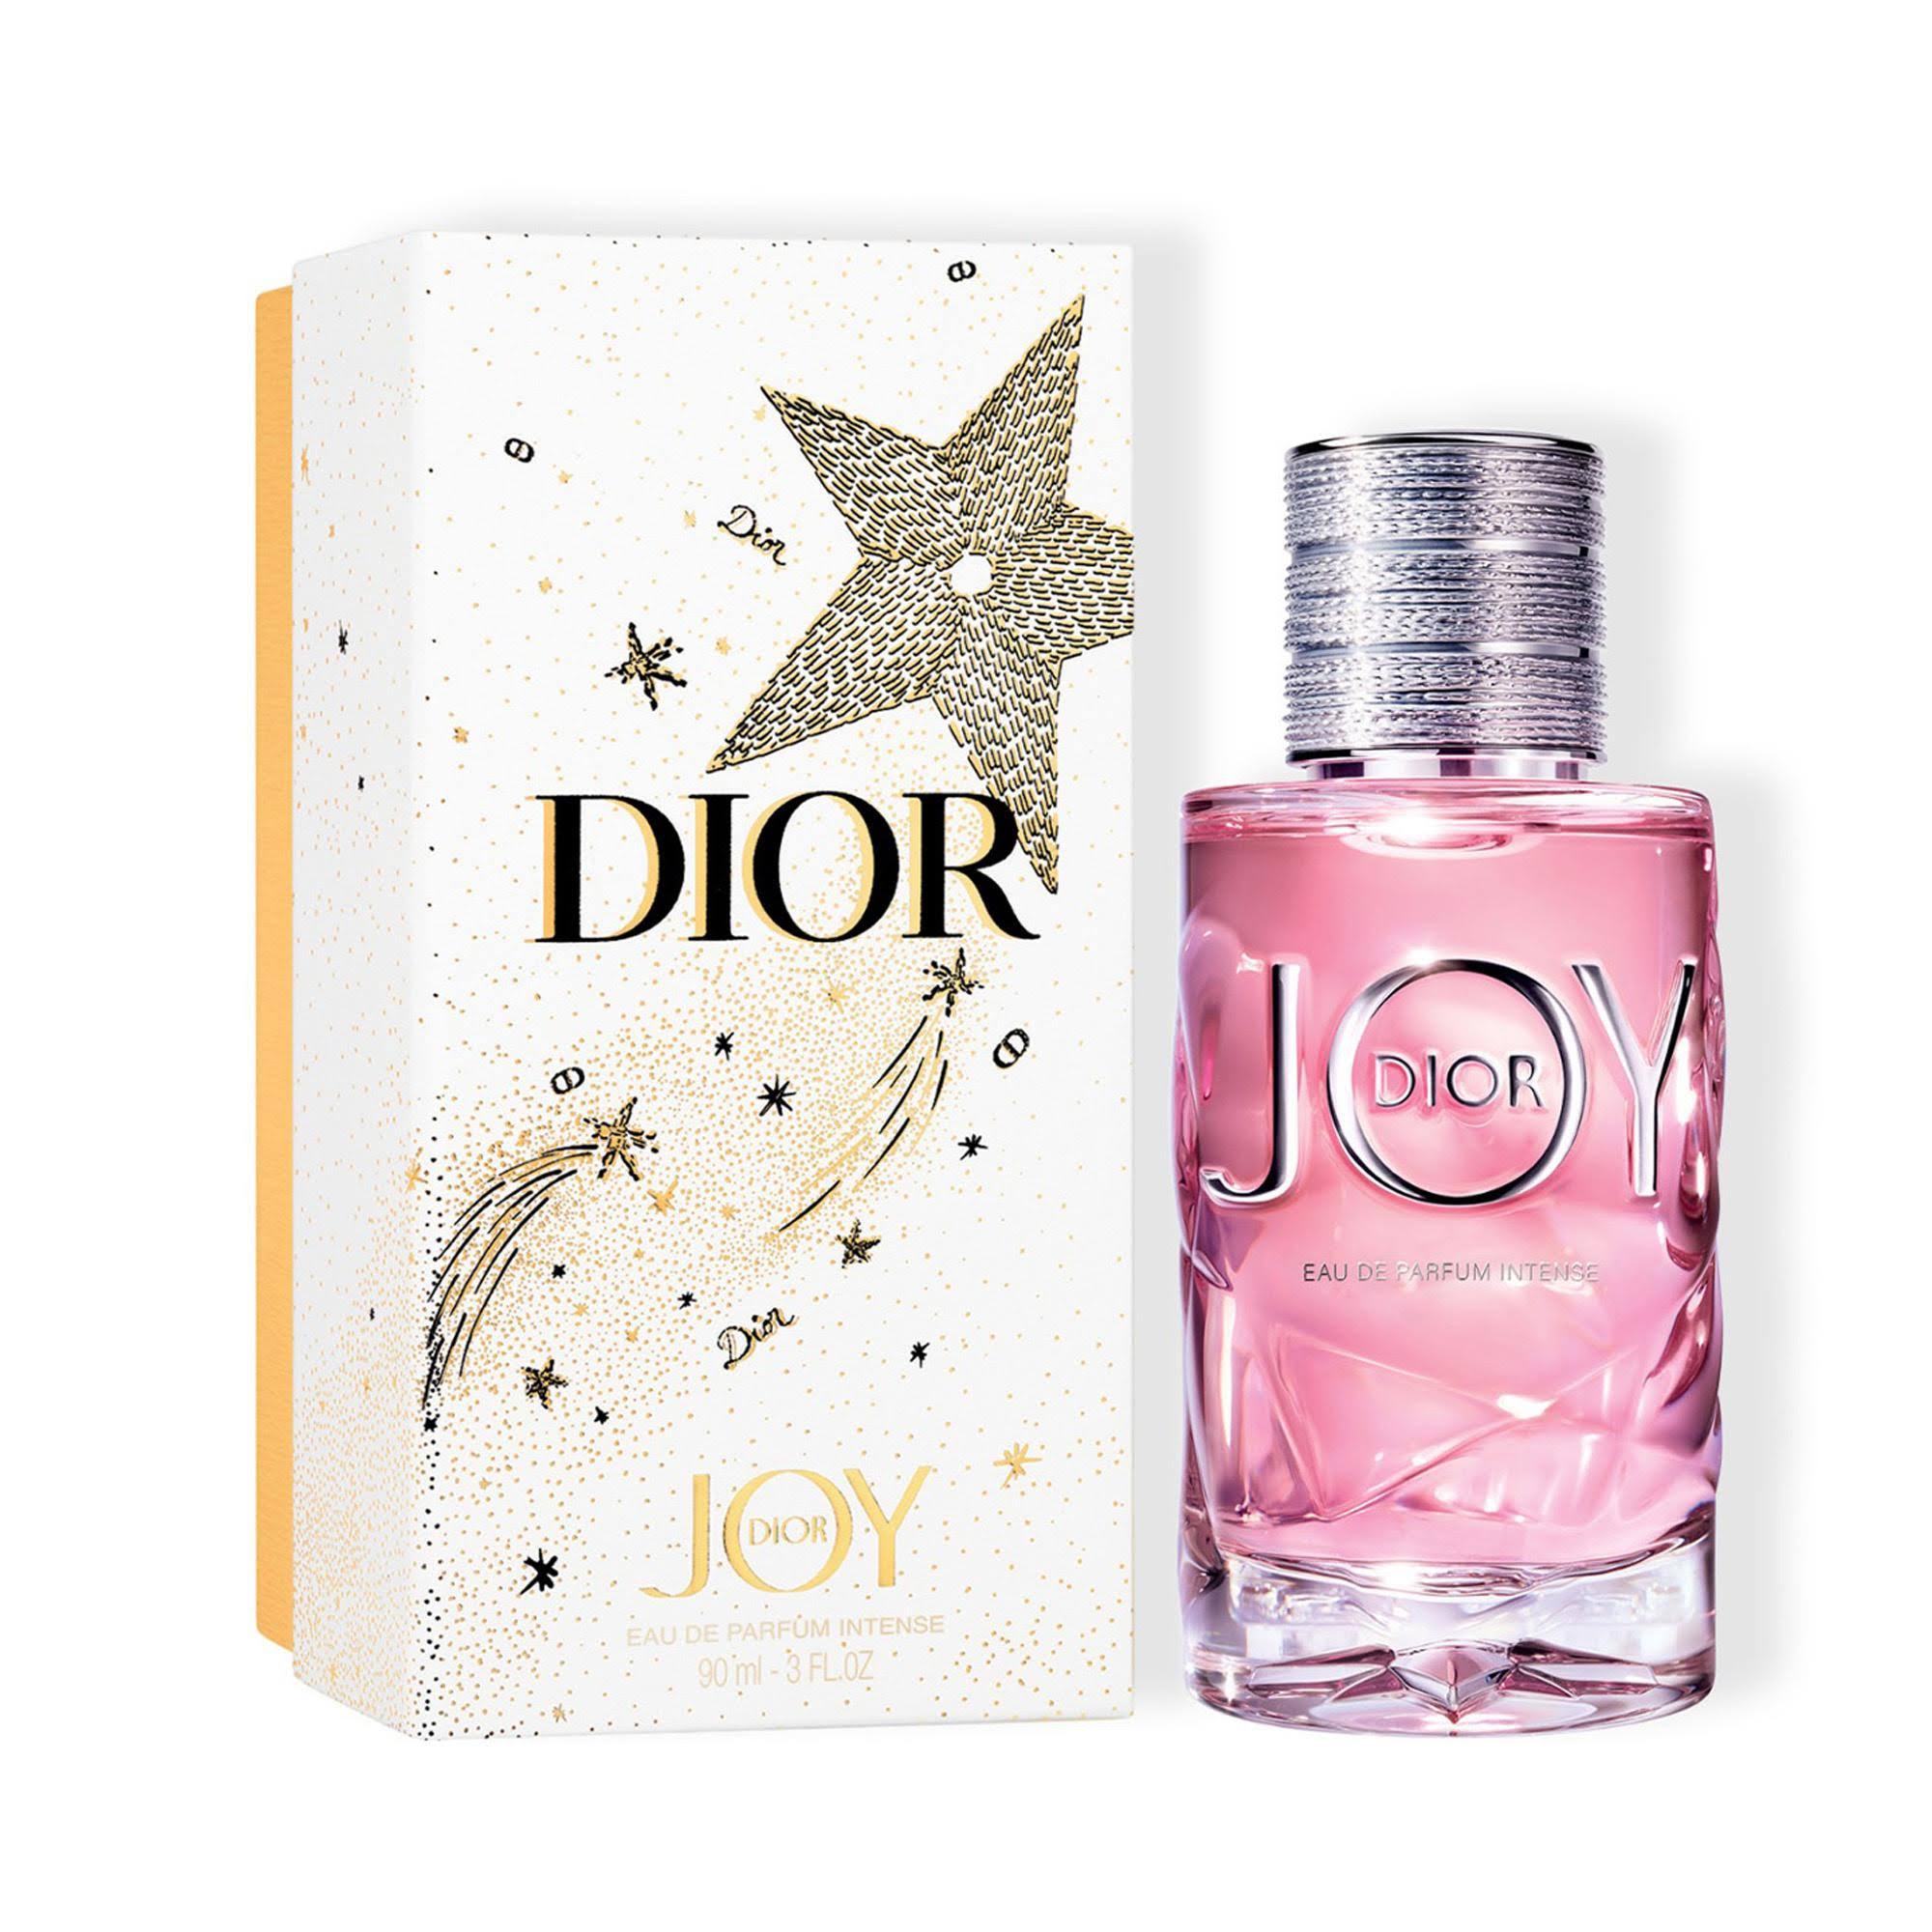 DIOR Joy by Eau De Parfum Intense Gift Box 90ml - Perfume